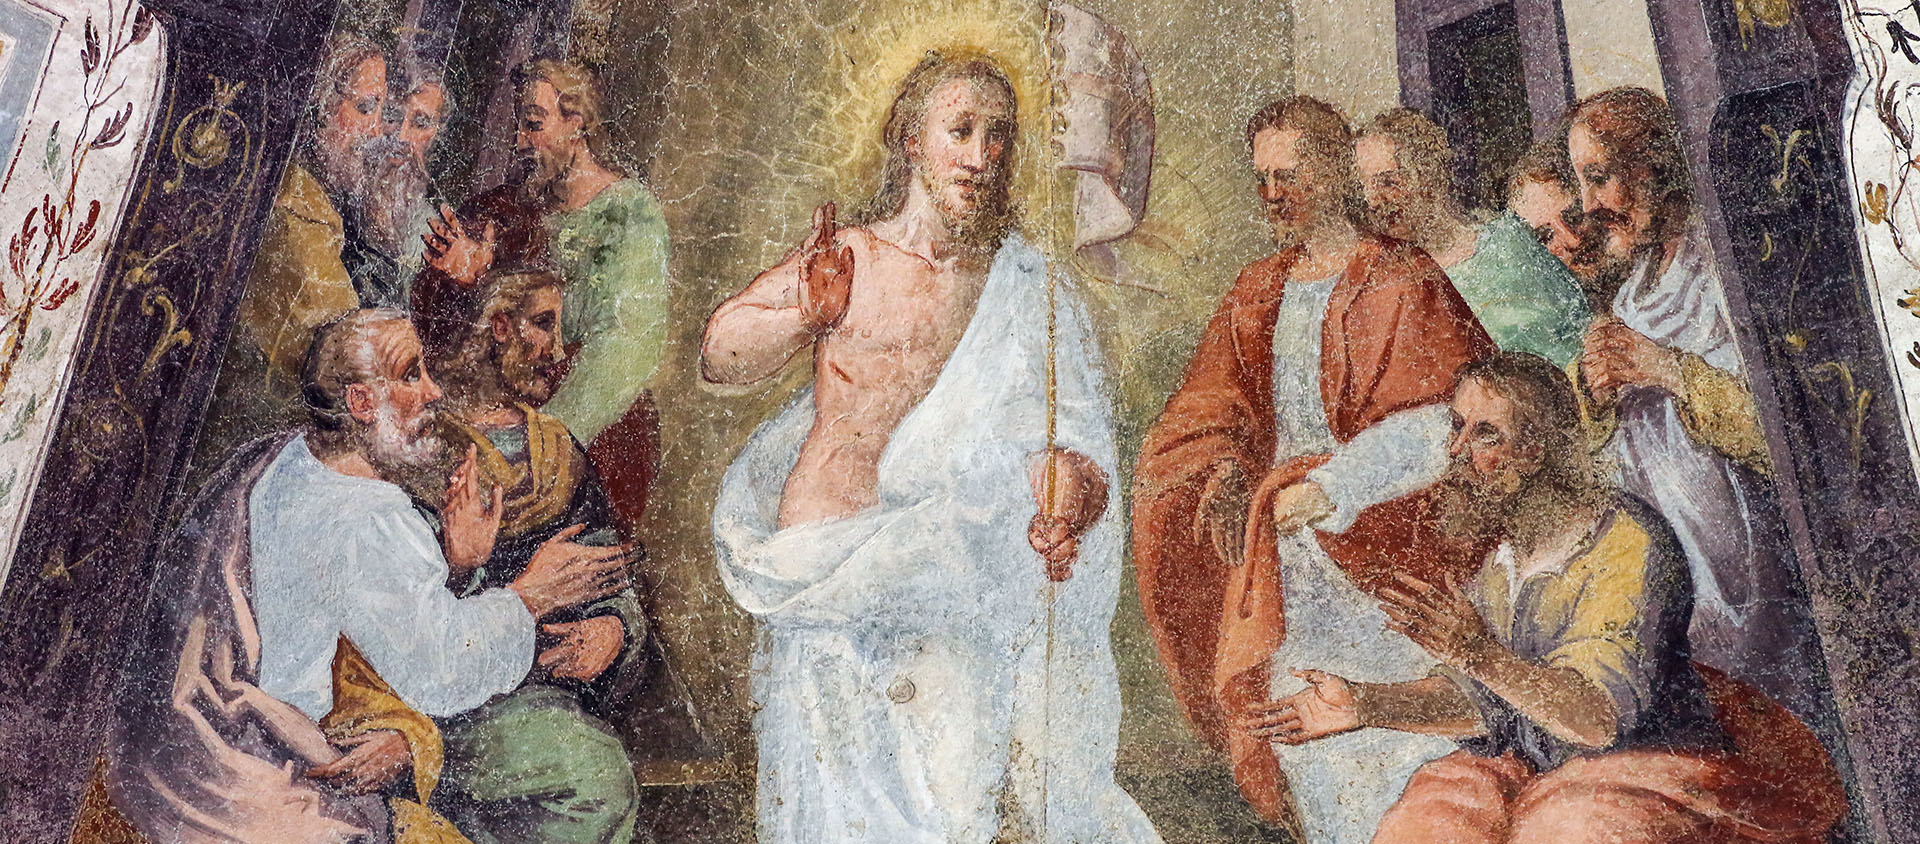 Christ ressuscité avec les apôtres. Fresque dans le cloître de Santa Maria Novella à Florence| © Flickr/LawrenceOP/CC BY-NC-ND 2.0